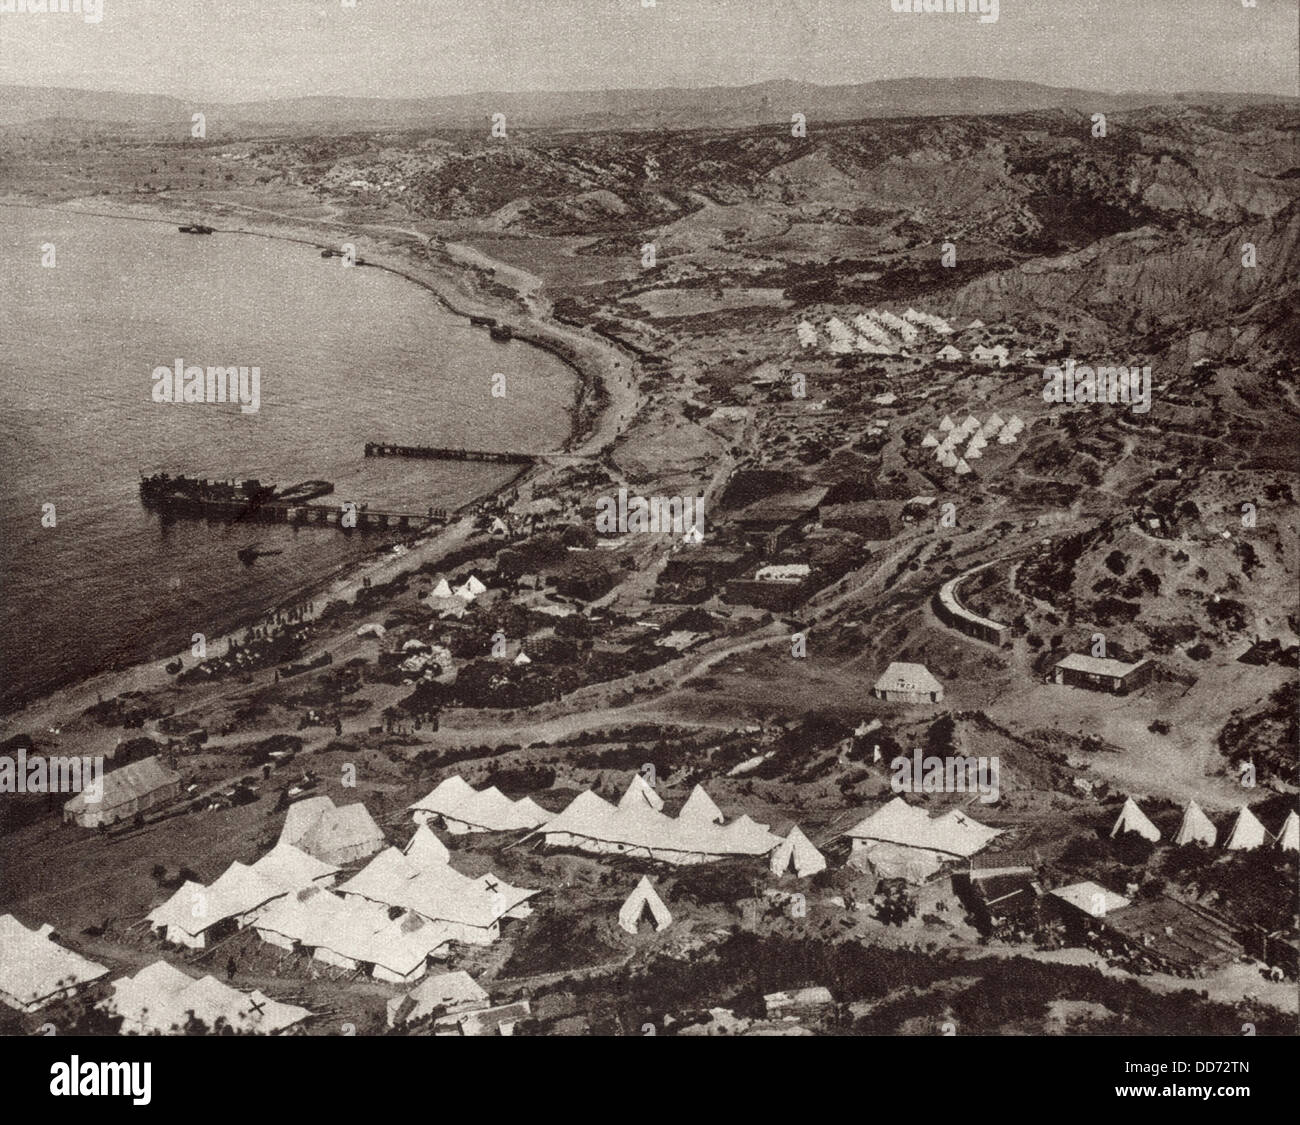 La Seconde Guerre mondiale 1. La plage en forme de croissant à Gallipoli avec le campement britannique sur la pointe sud de la péninsule de Gallipoli Banque D'Images